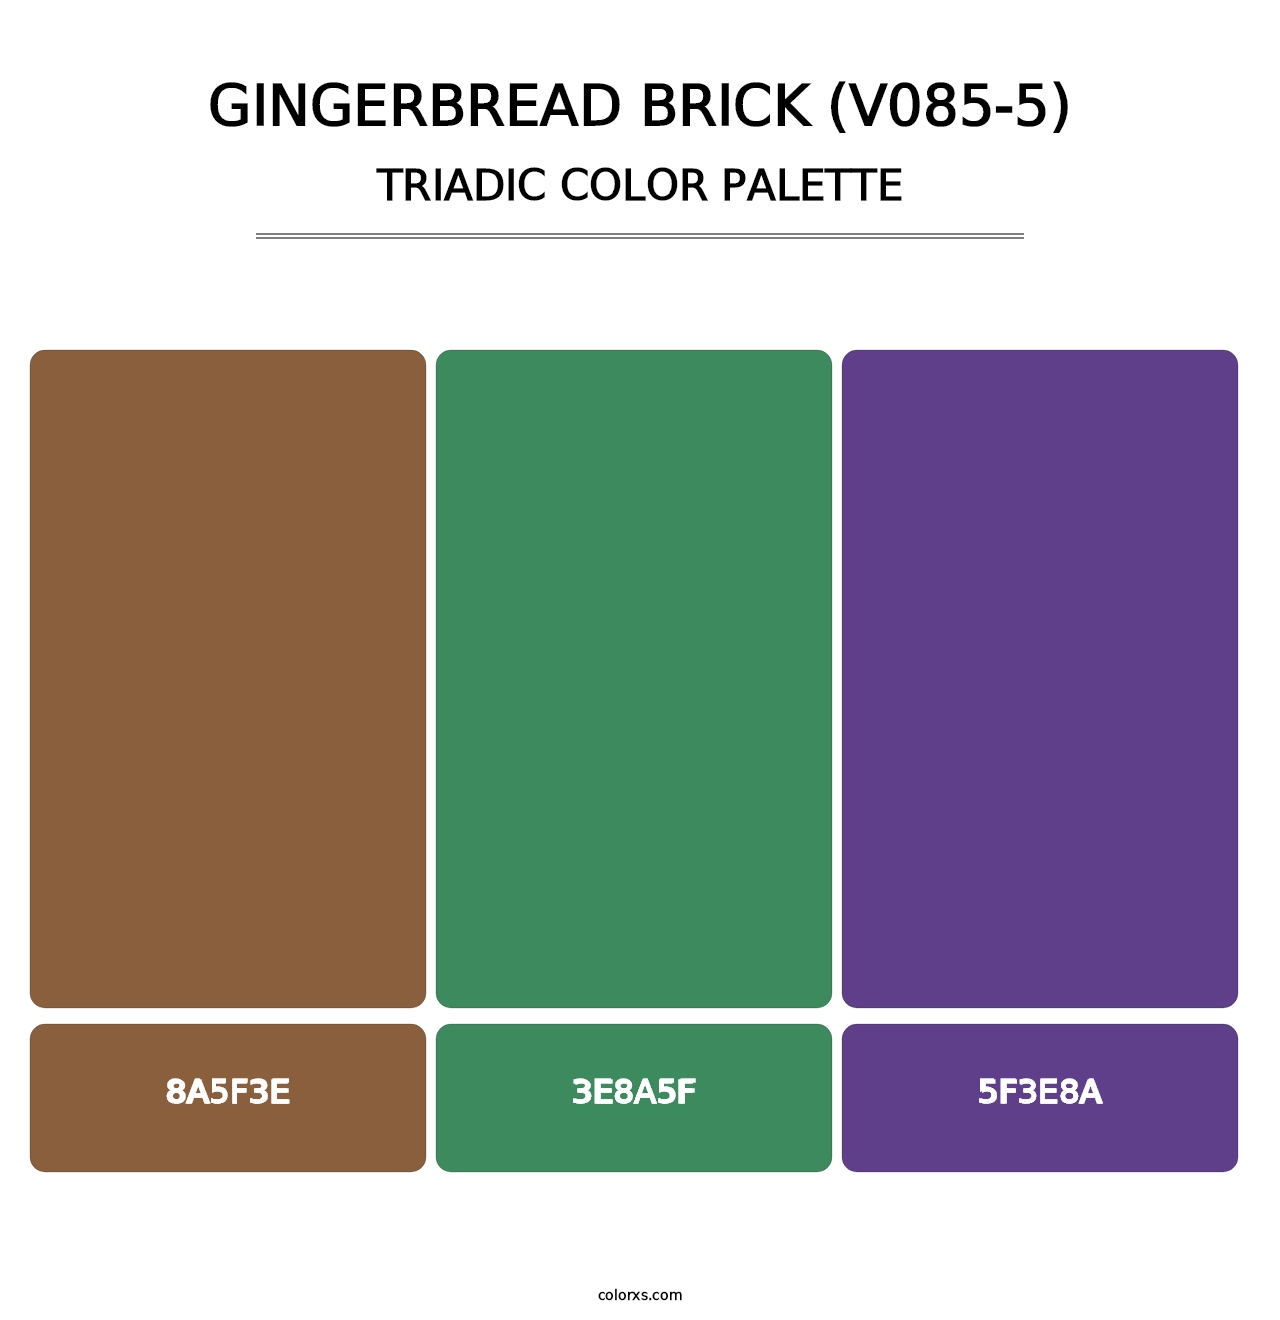 Gingerbread Brick (V085-5) - Triadic Color Palette